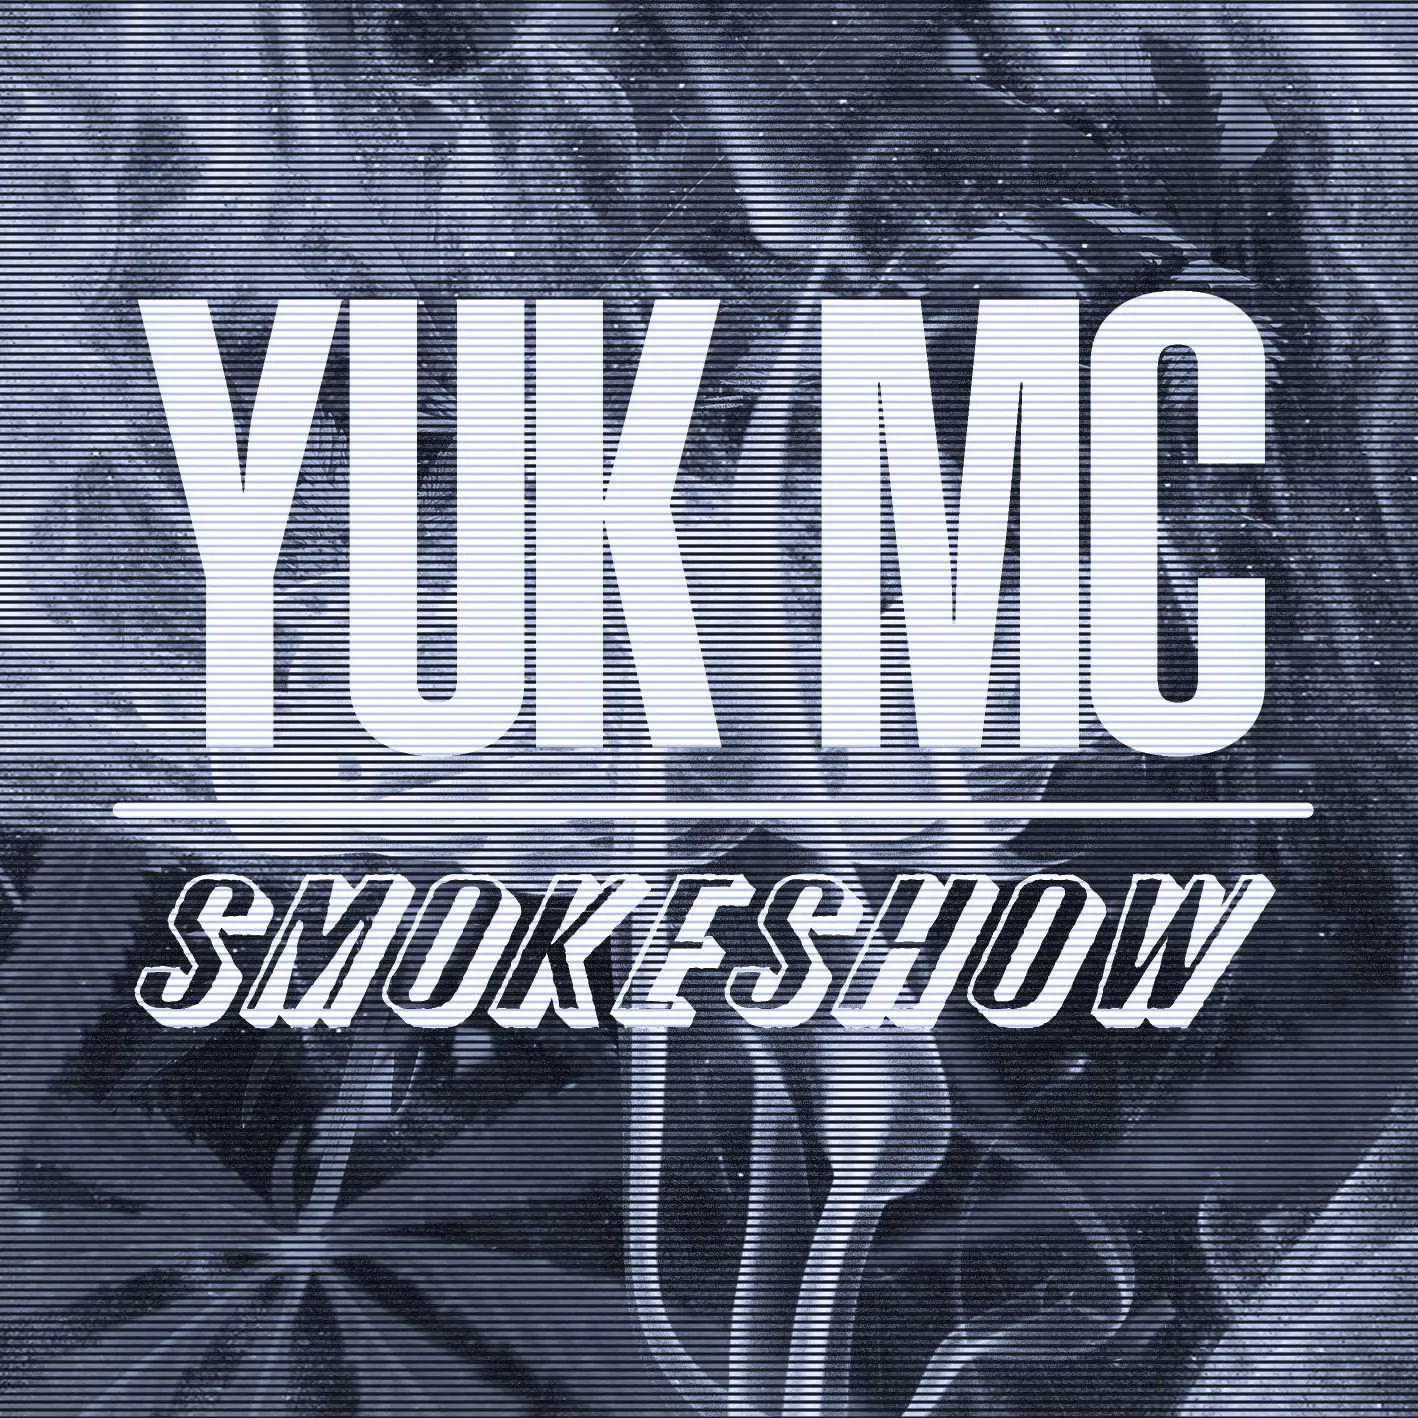 Album cover for “Smokeshow” by Yuk MC